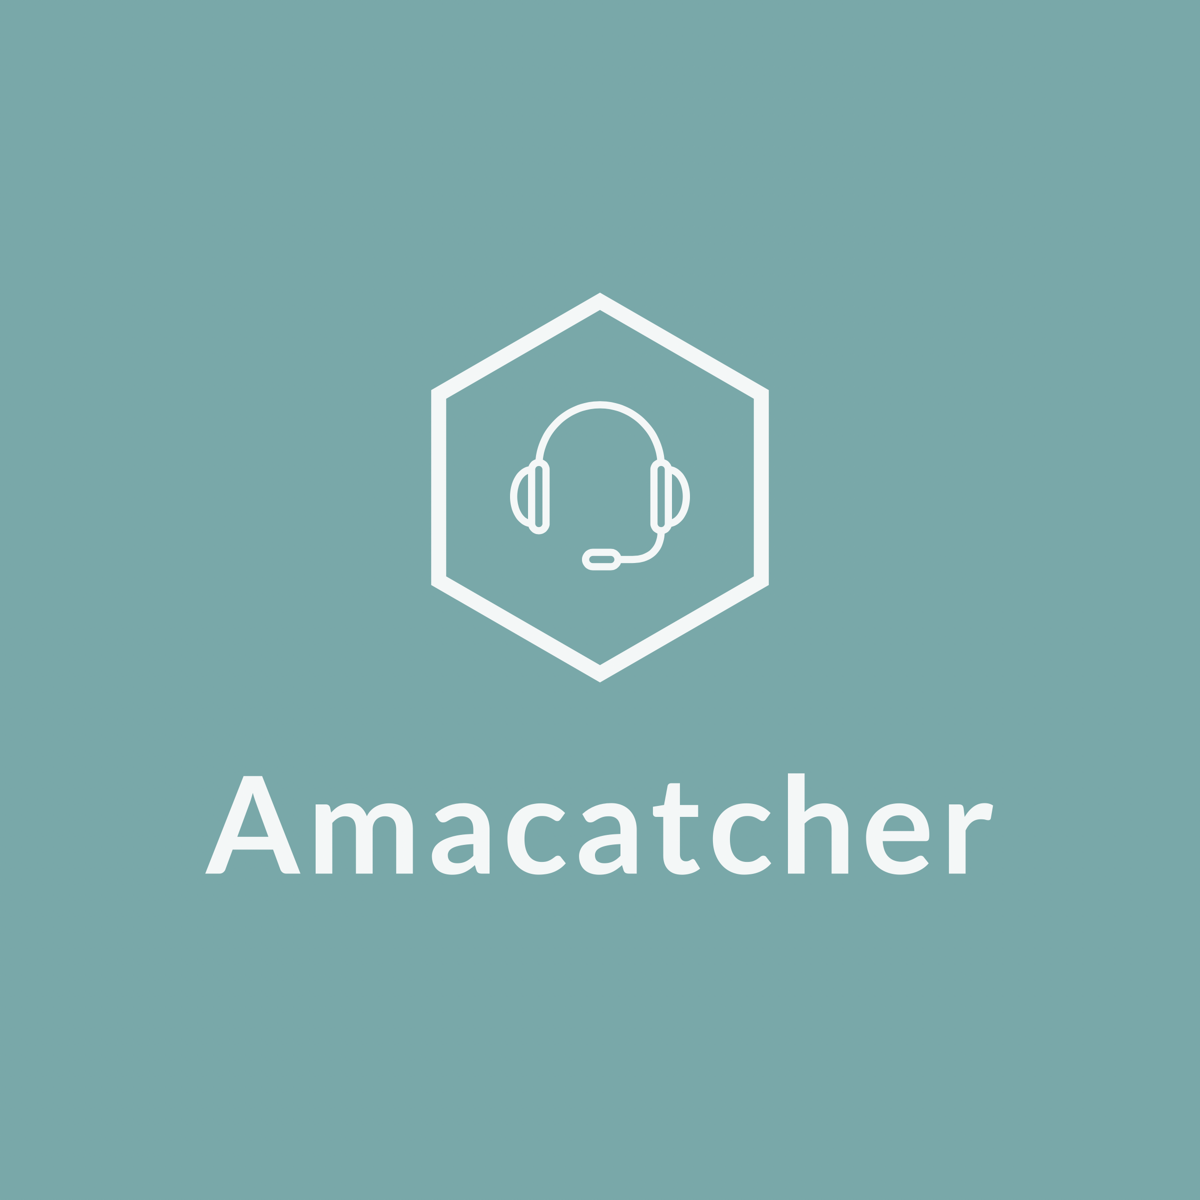 Amacatcher - 激安中古品ランキングサイト